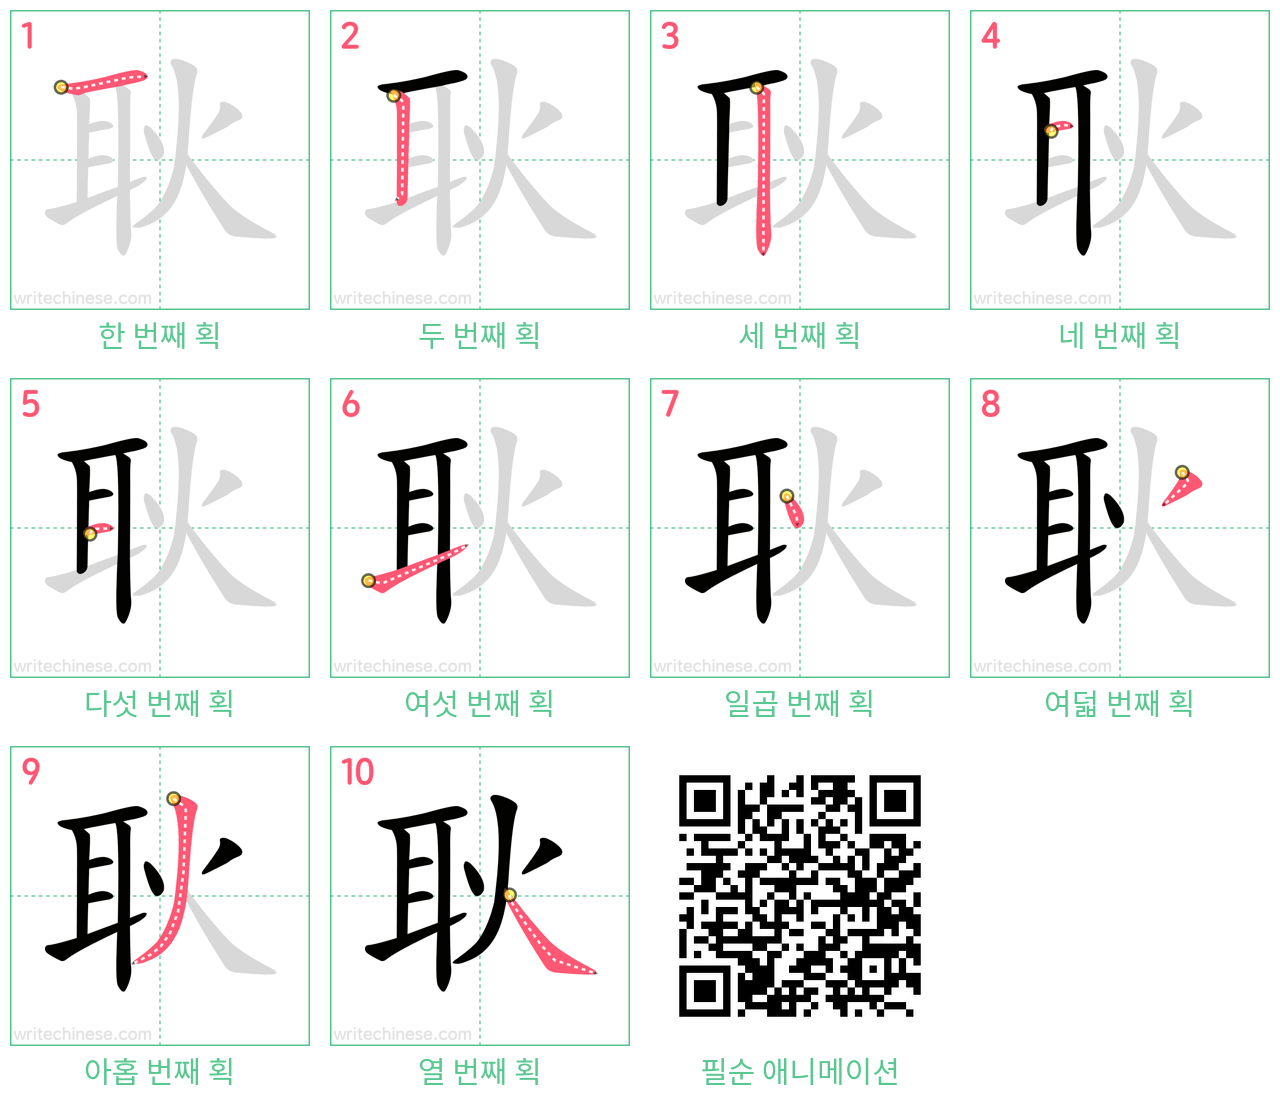 耿 step-by-step stroke order diagrams